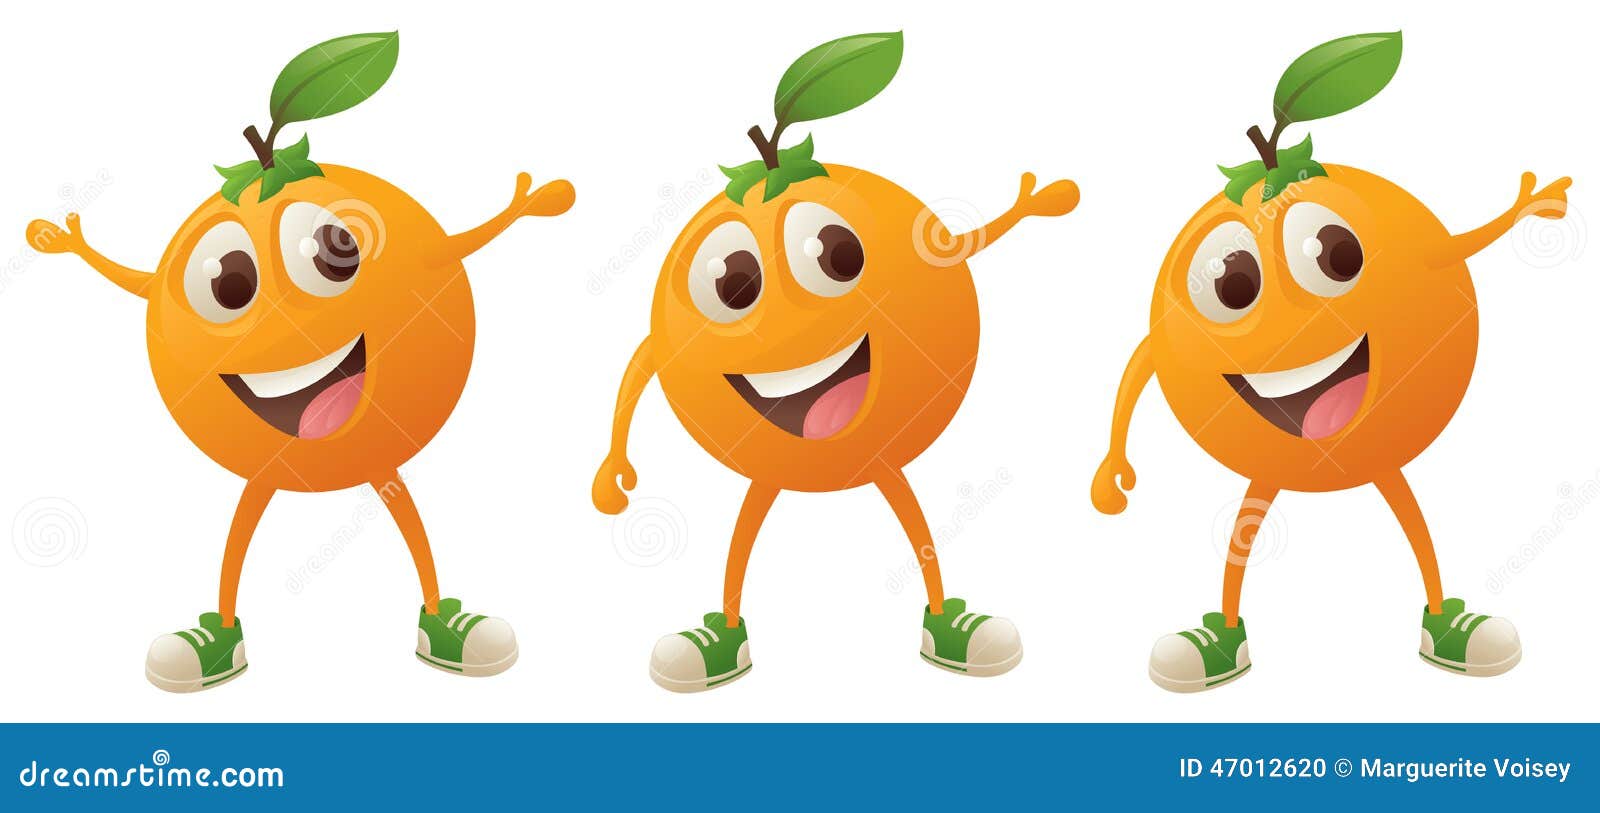 Конкурс кто твой оранжевый герой. Отряд апельсинки. Название апельсинки. Эмблема апельсинки для команды. Речевка для отряда апельсинки.